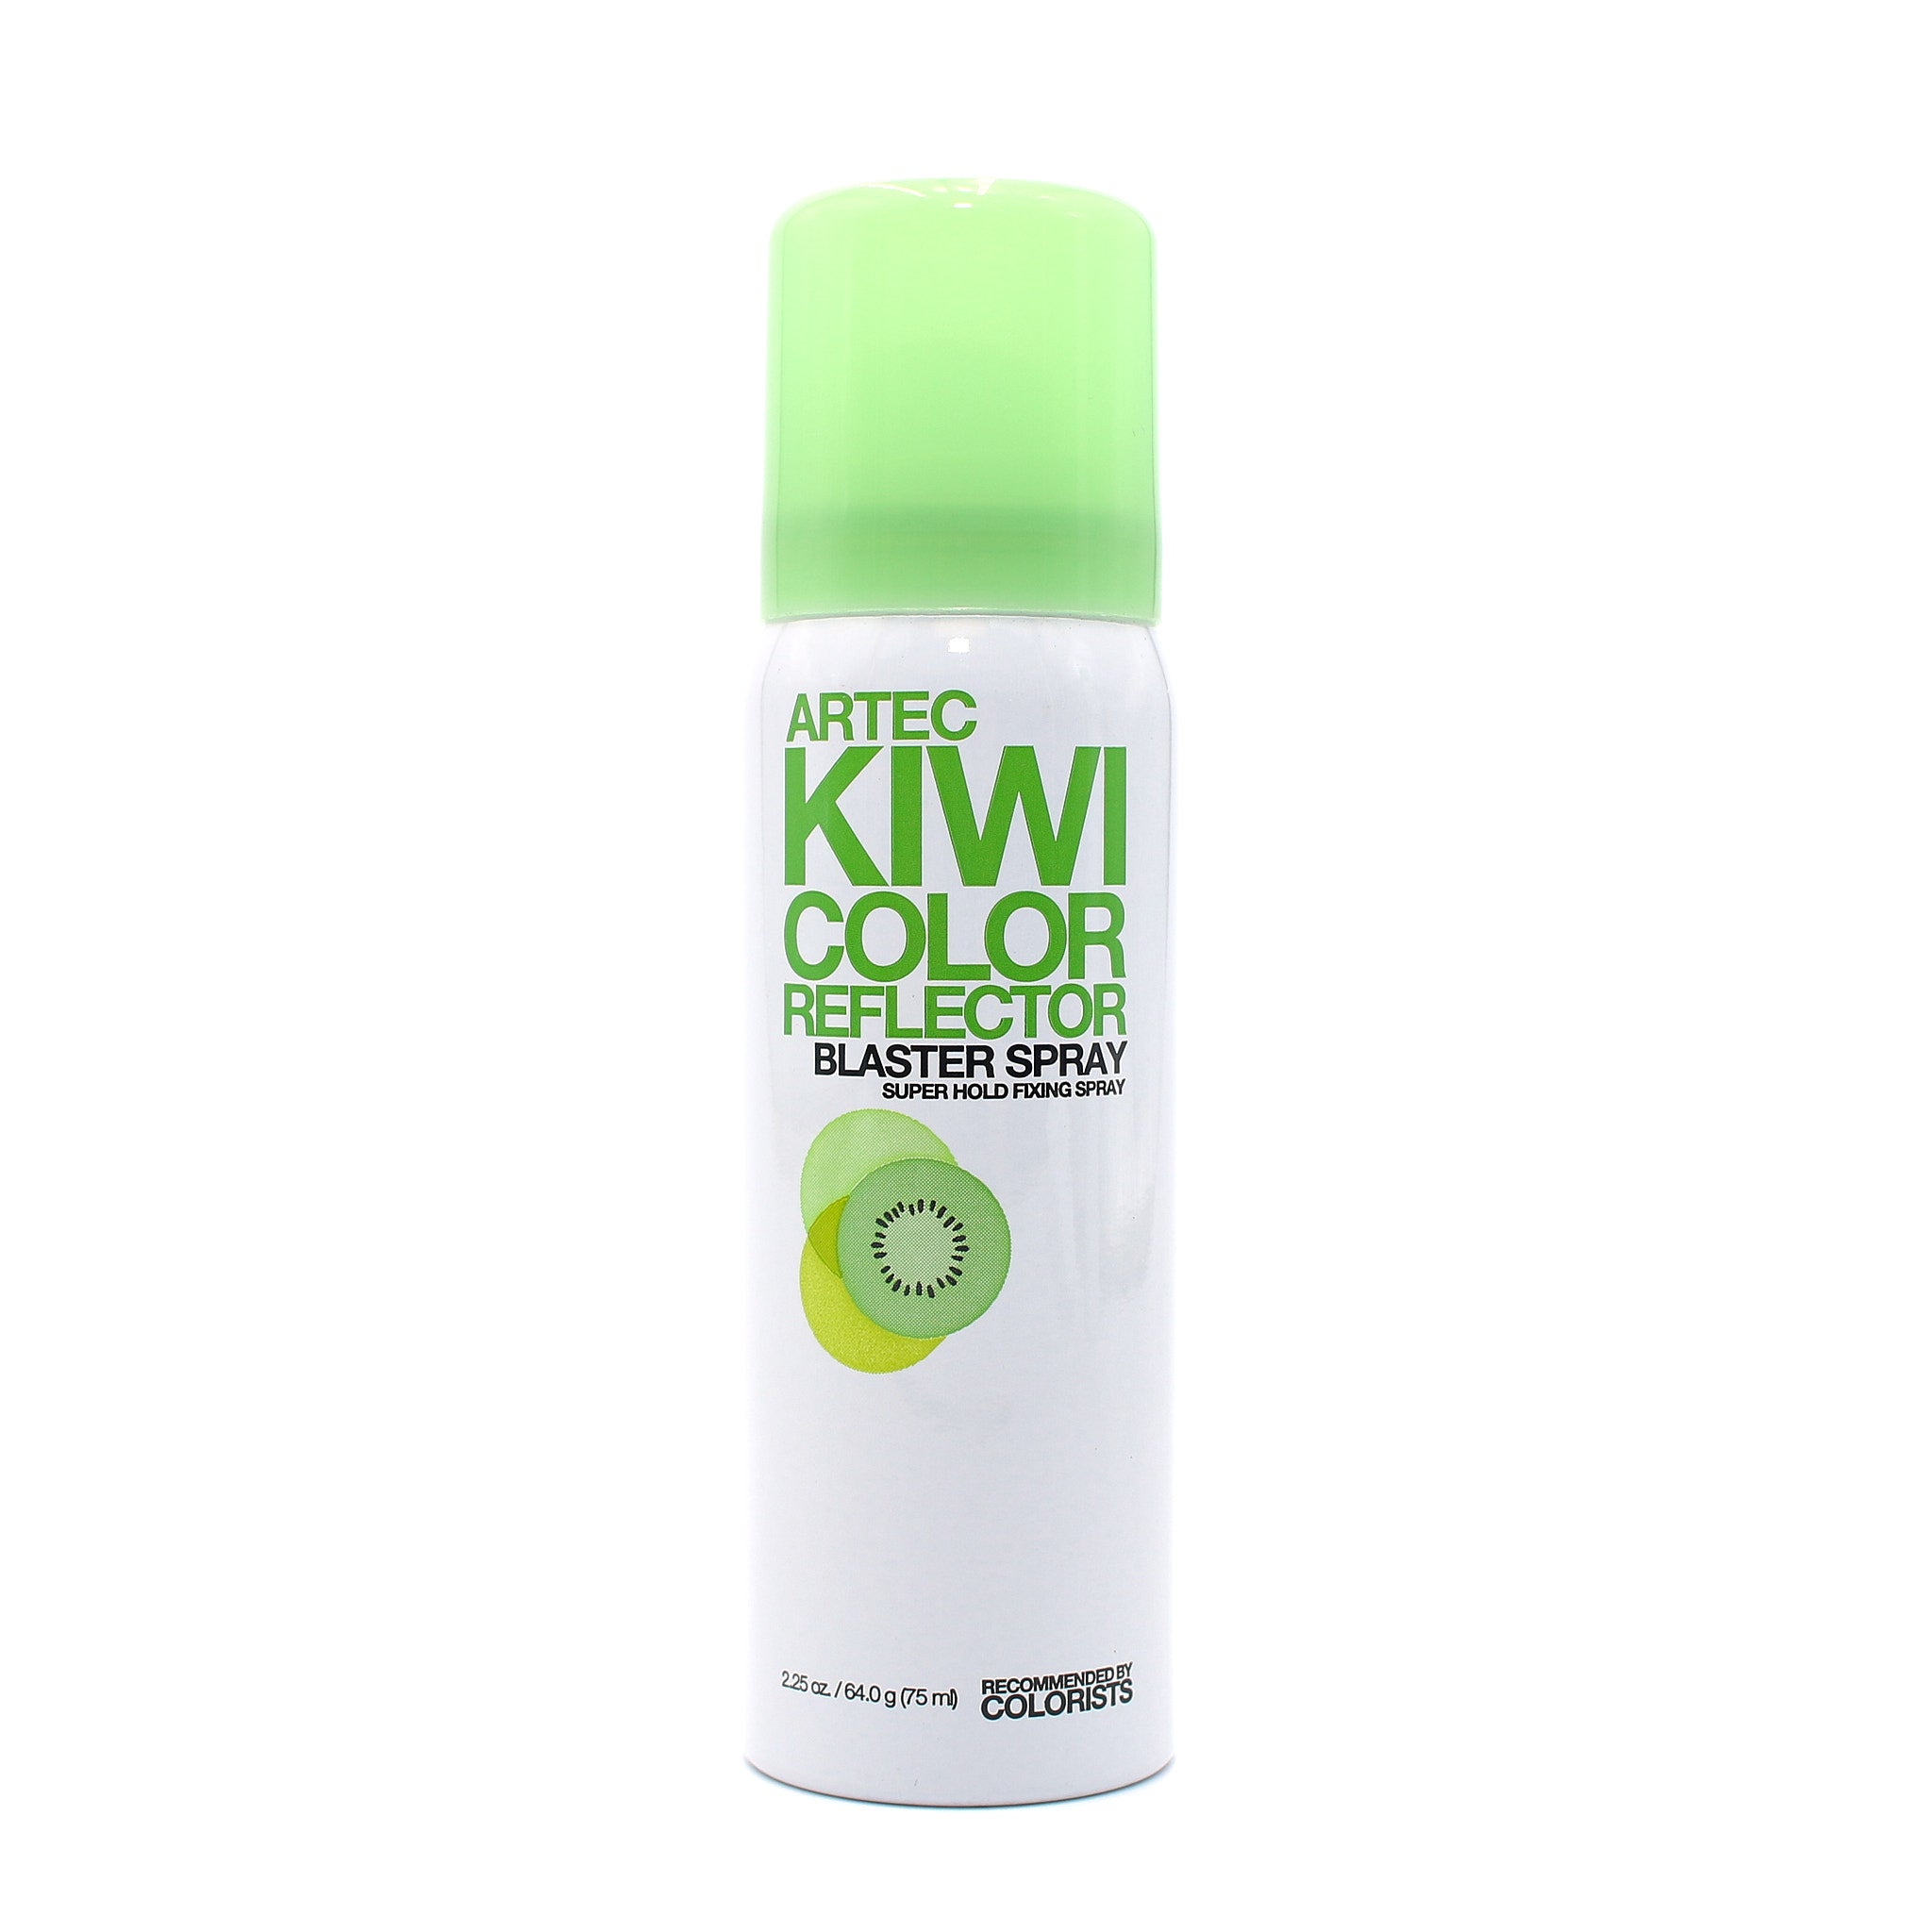 LOREAL Artec Kiwi Color Reflector Blaster Spray 2.25 oz